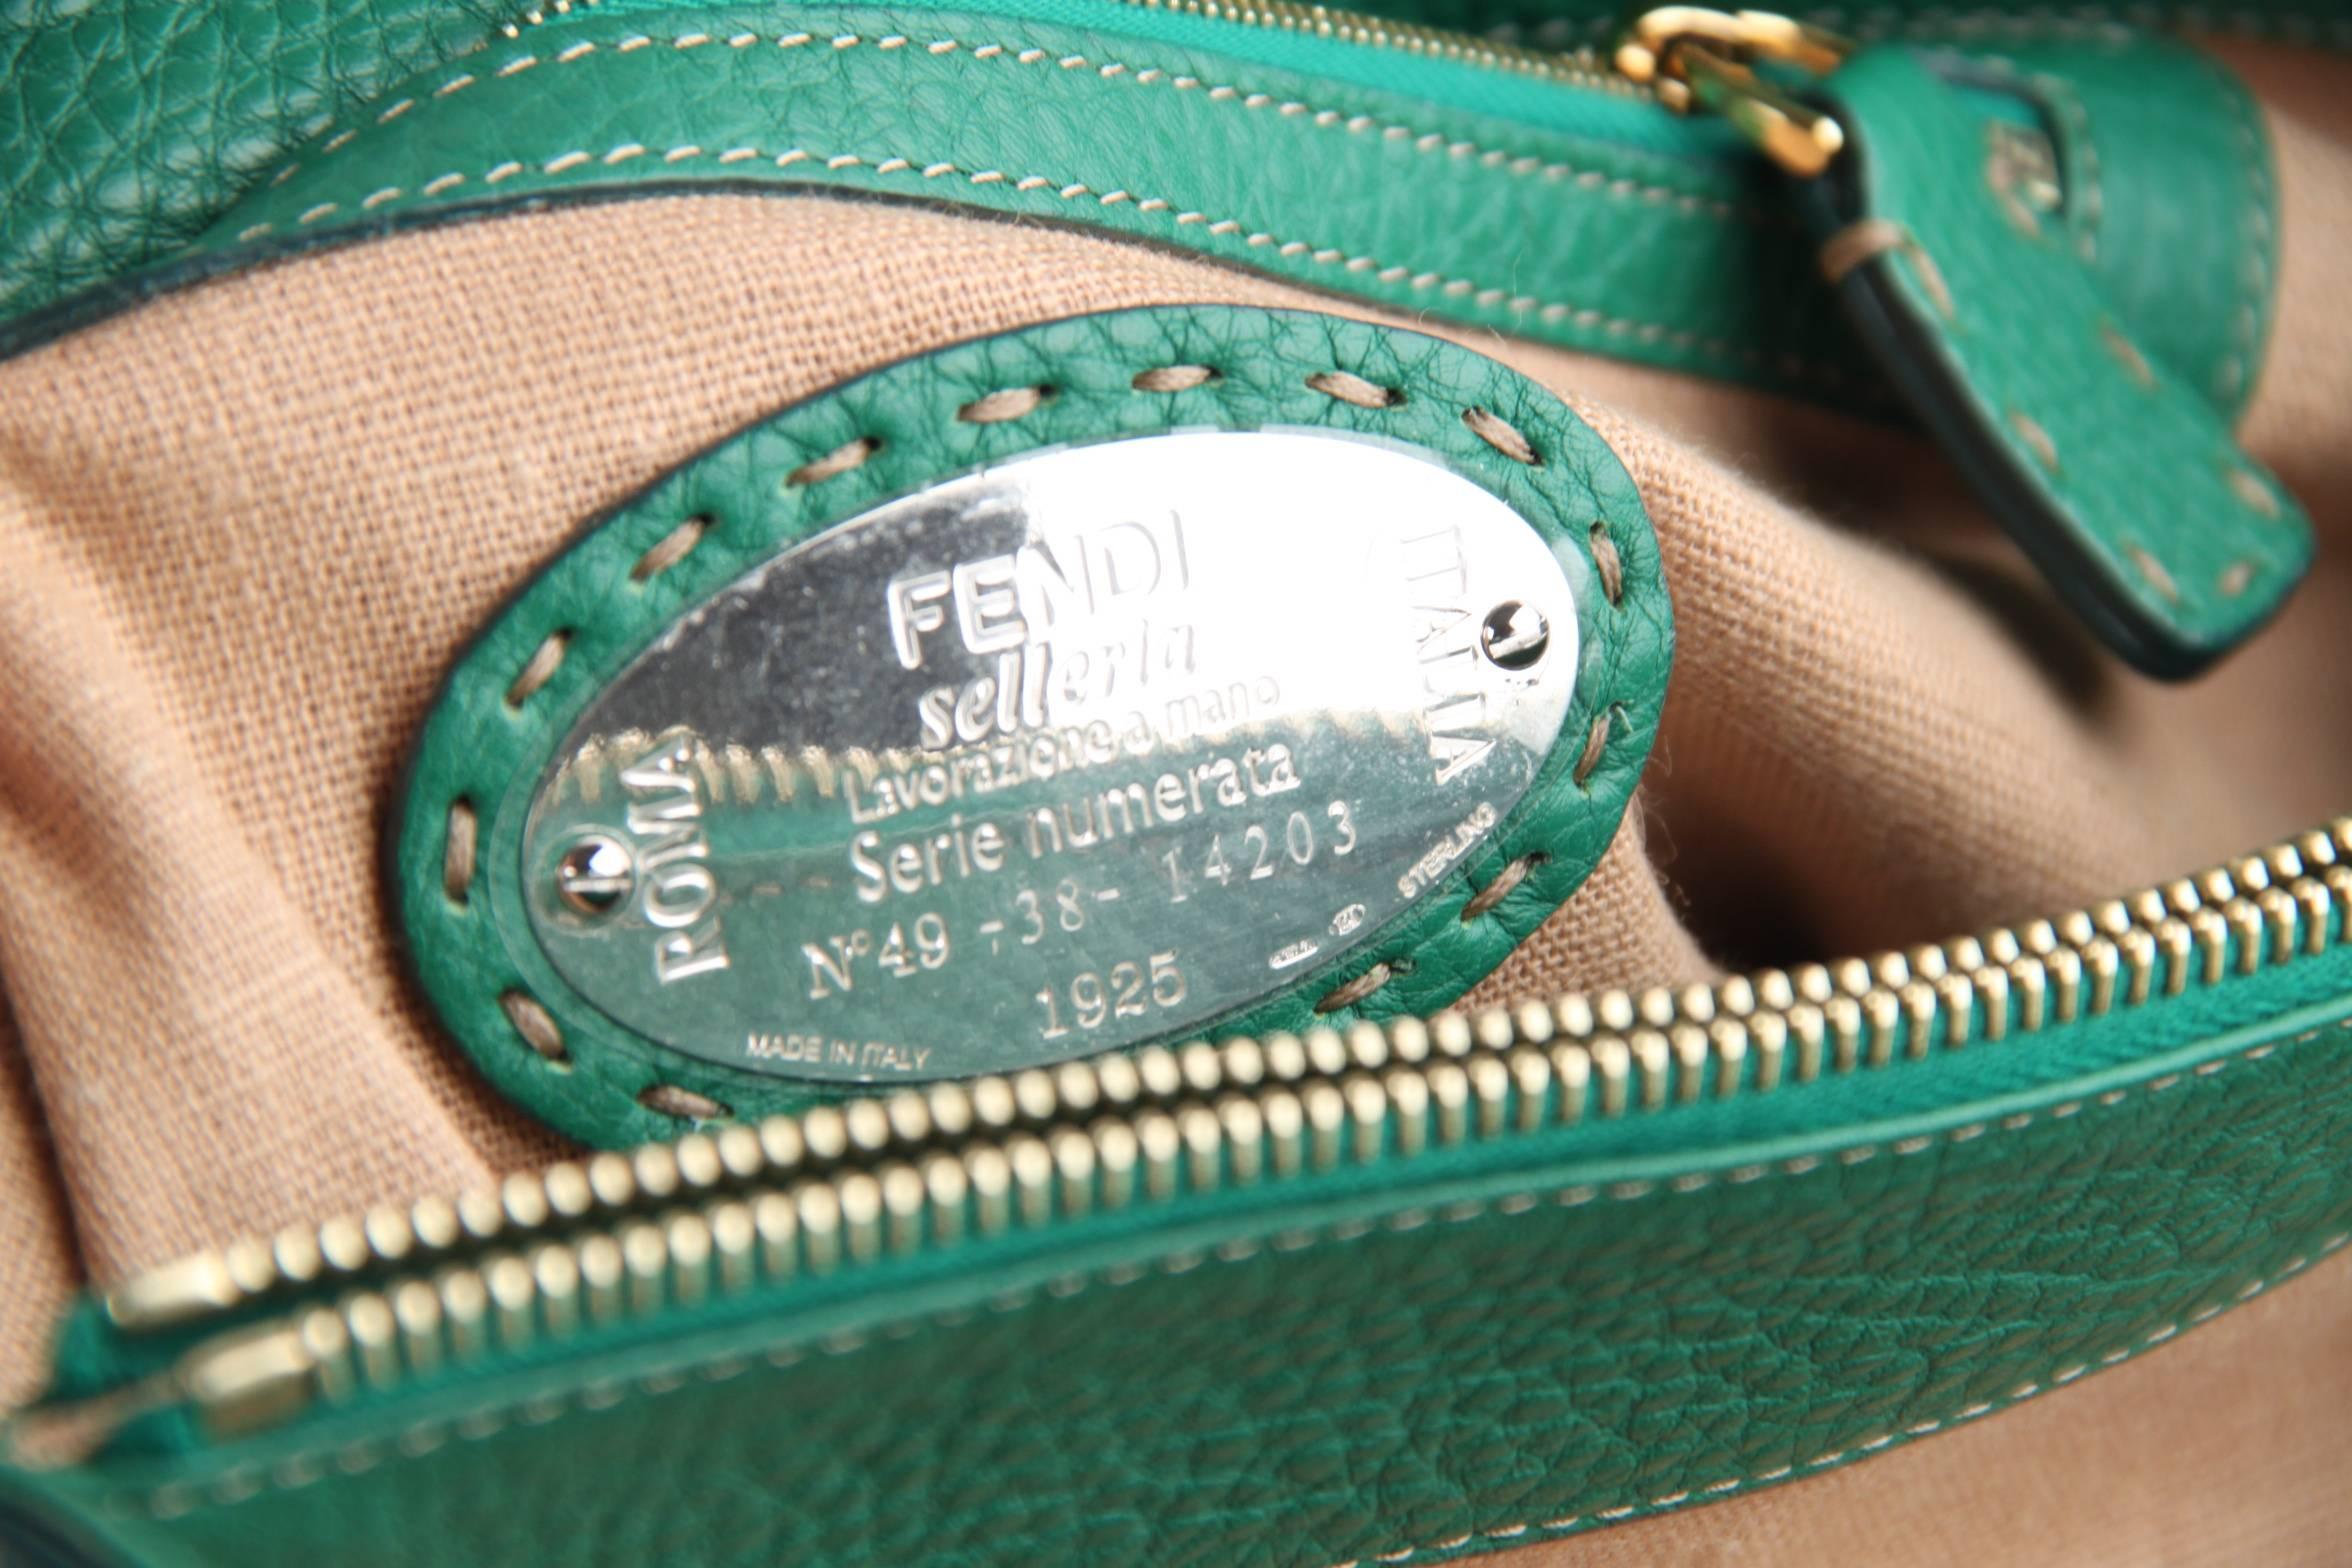 FENDI SELLERIA Green & Tan Leather LINDA BAG Satchel HANDBAG Tote 1